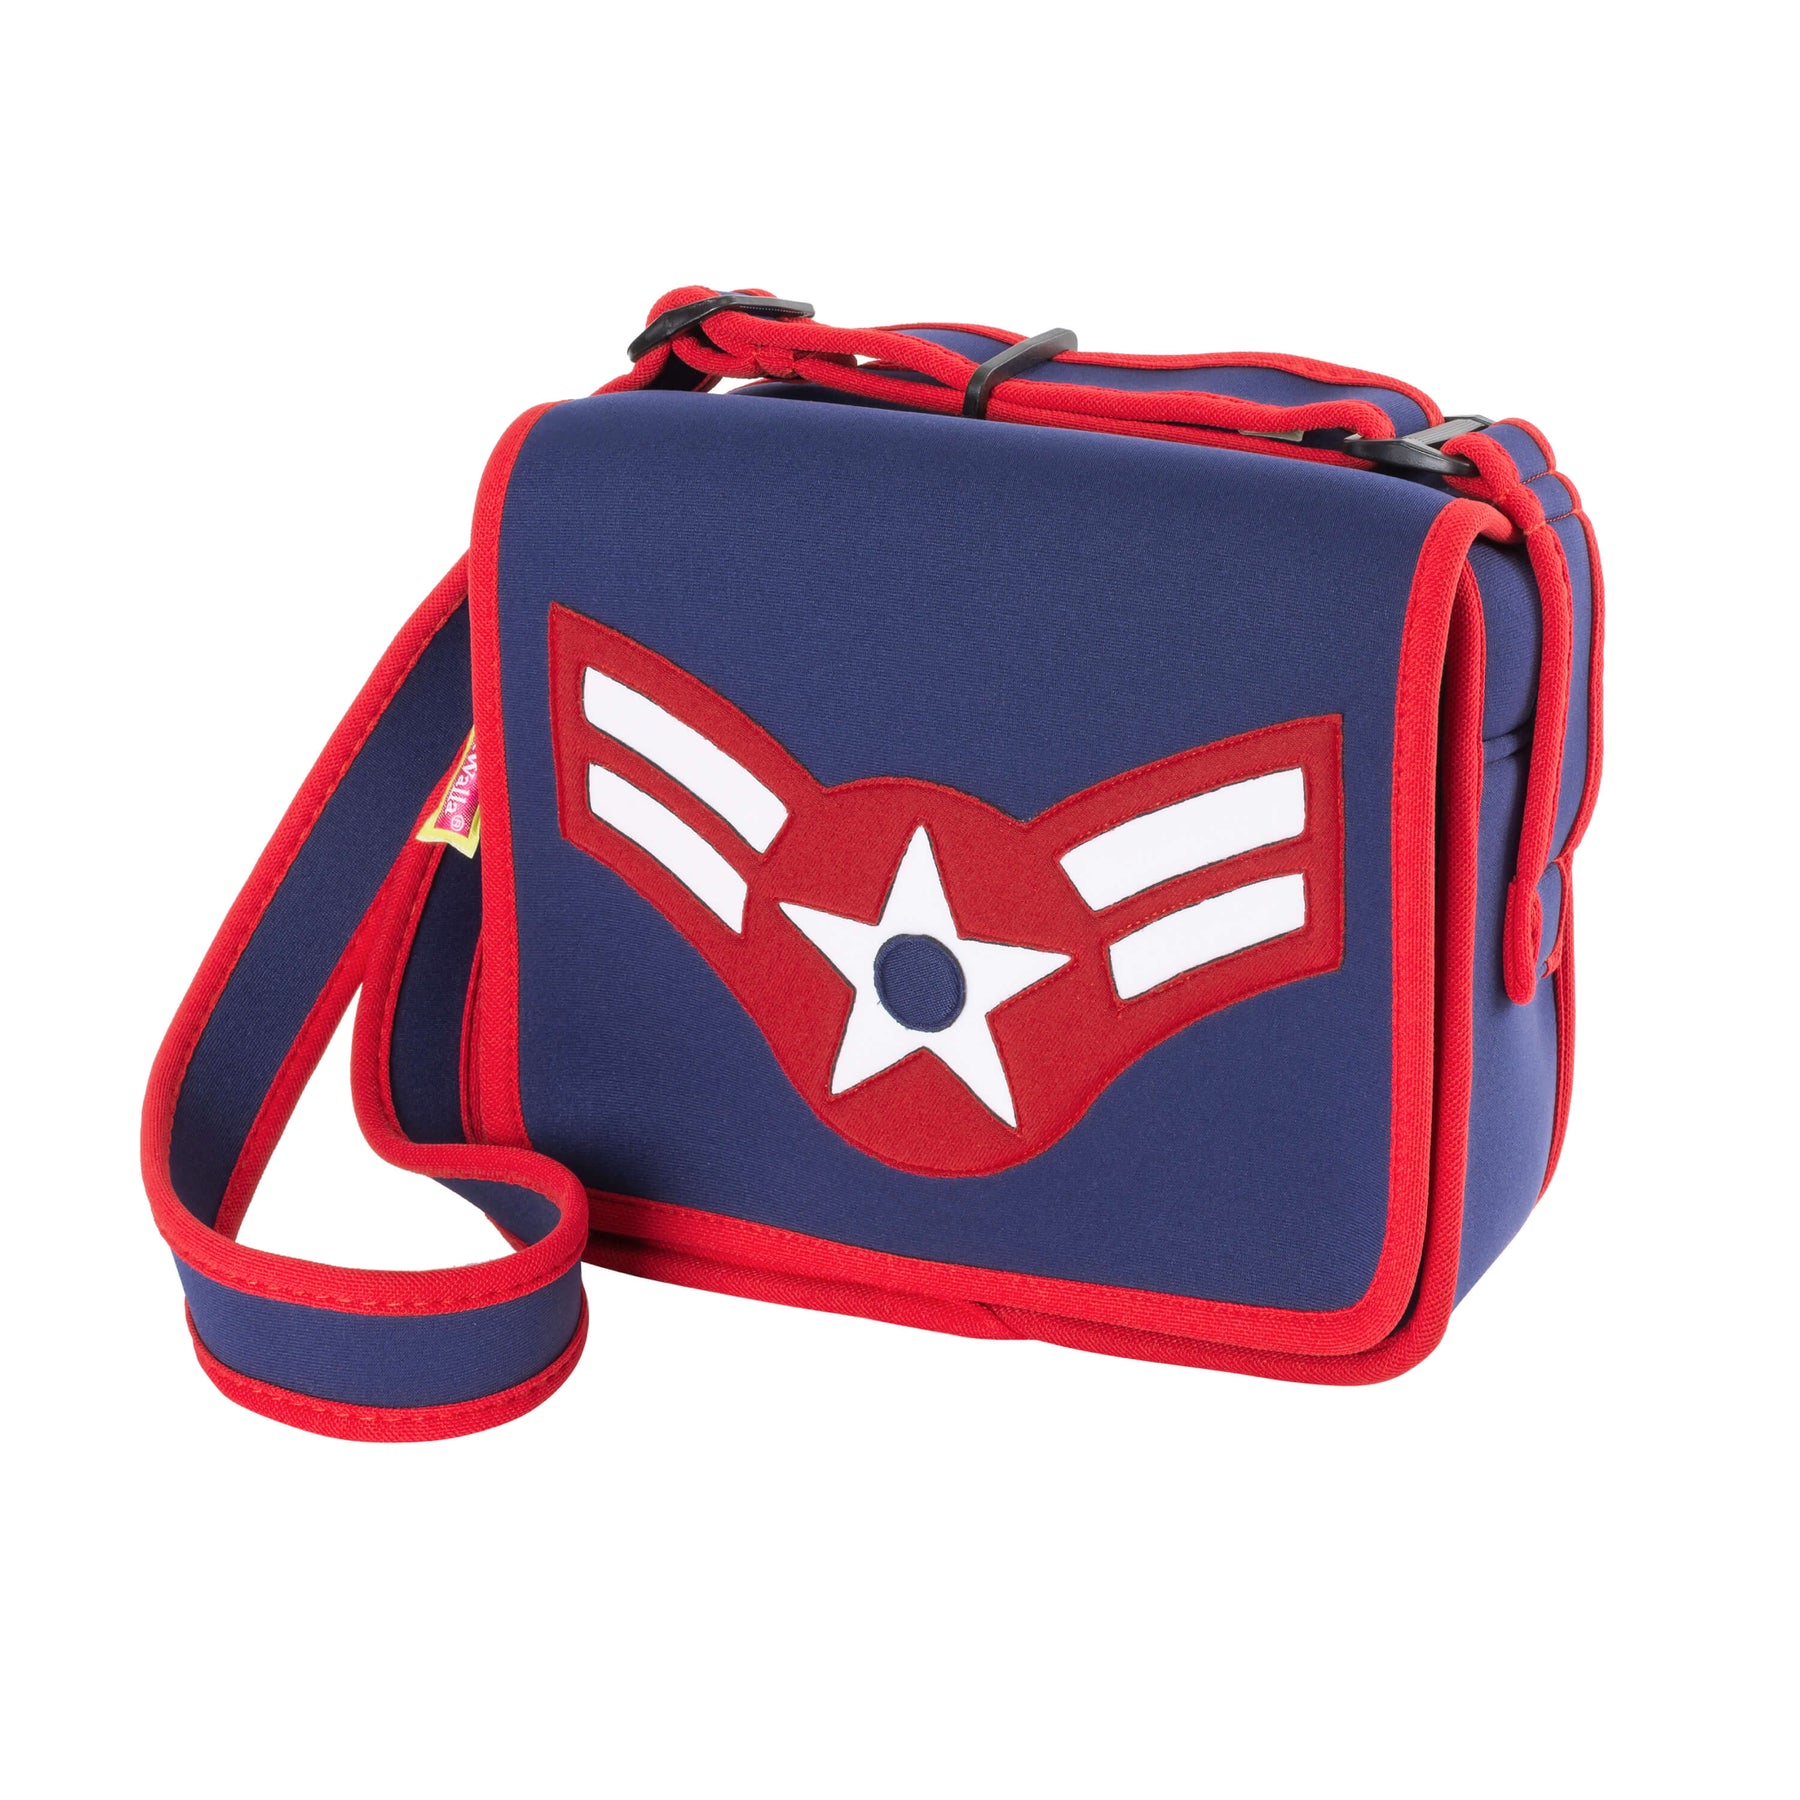 American Flyer Messenger Bag - On Sale!